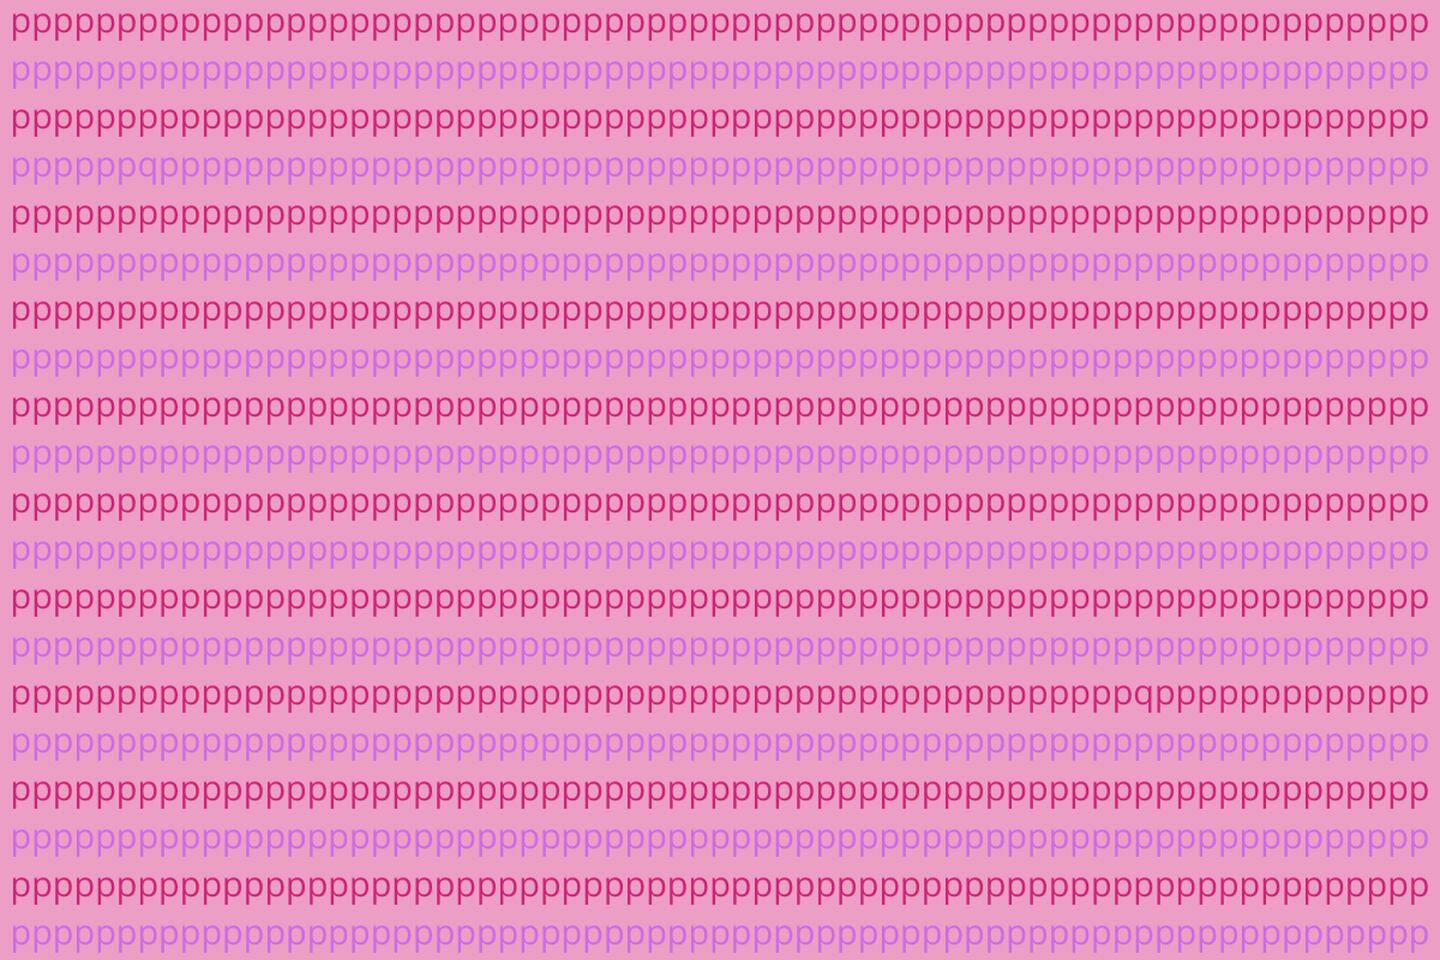 Imagen llena de "p" con un fondo rosa, y entre ellas hay dos "q" escondidas.